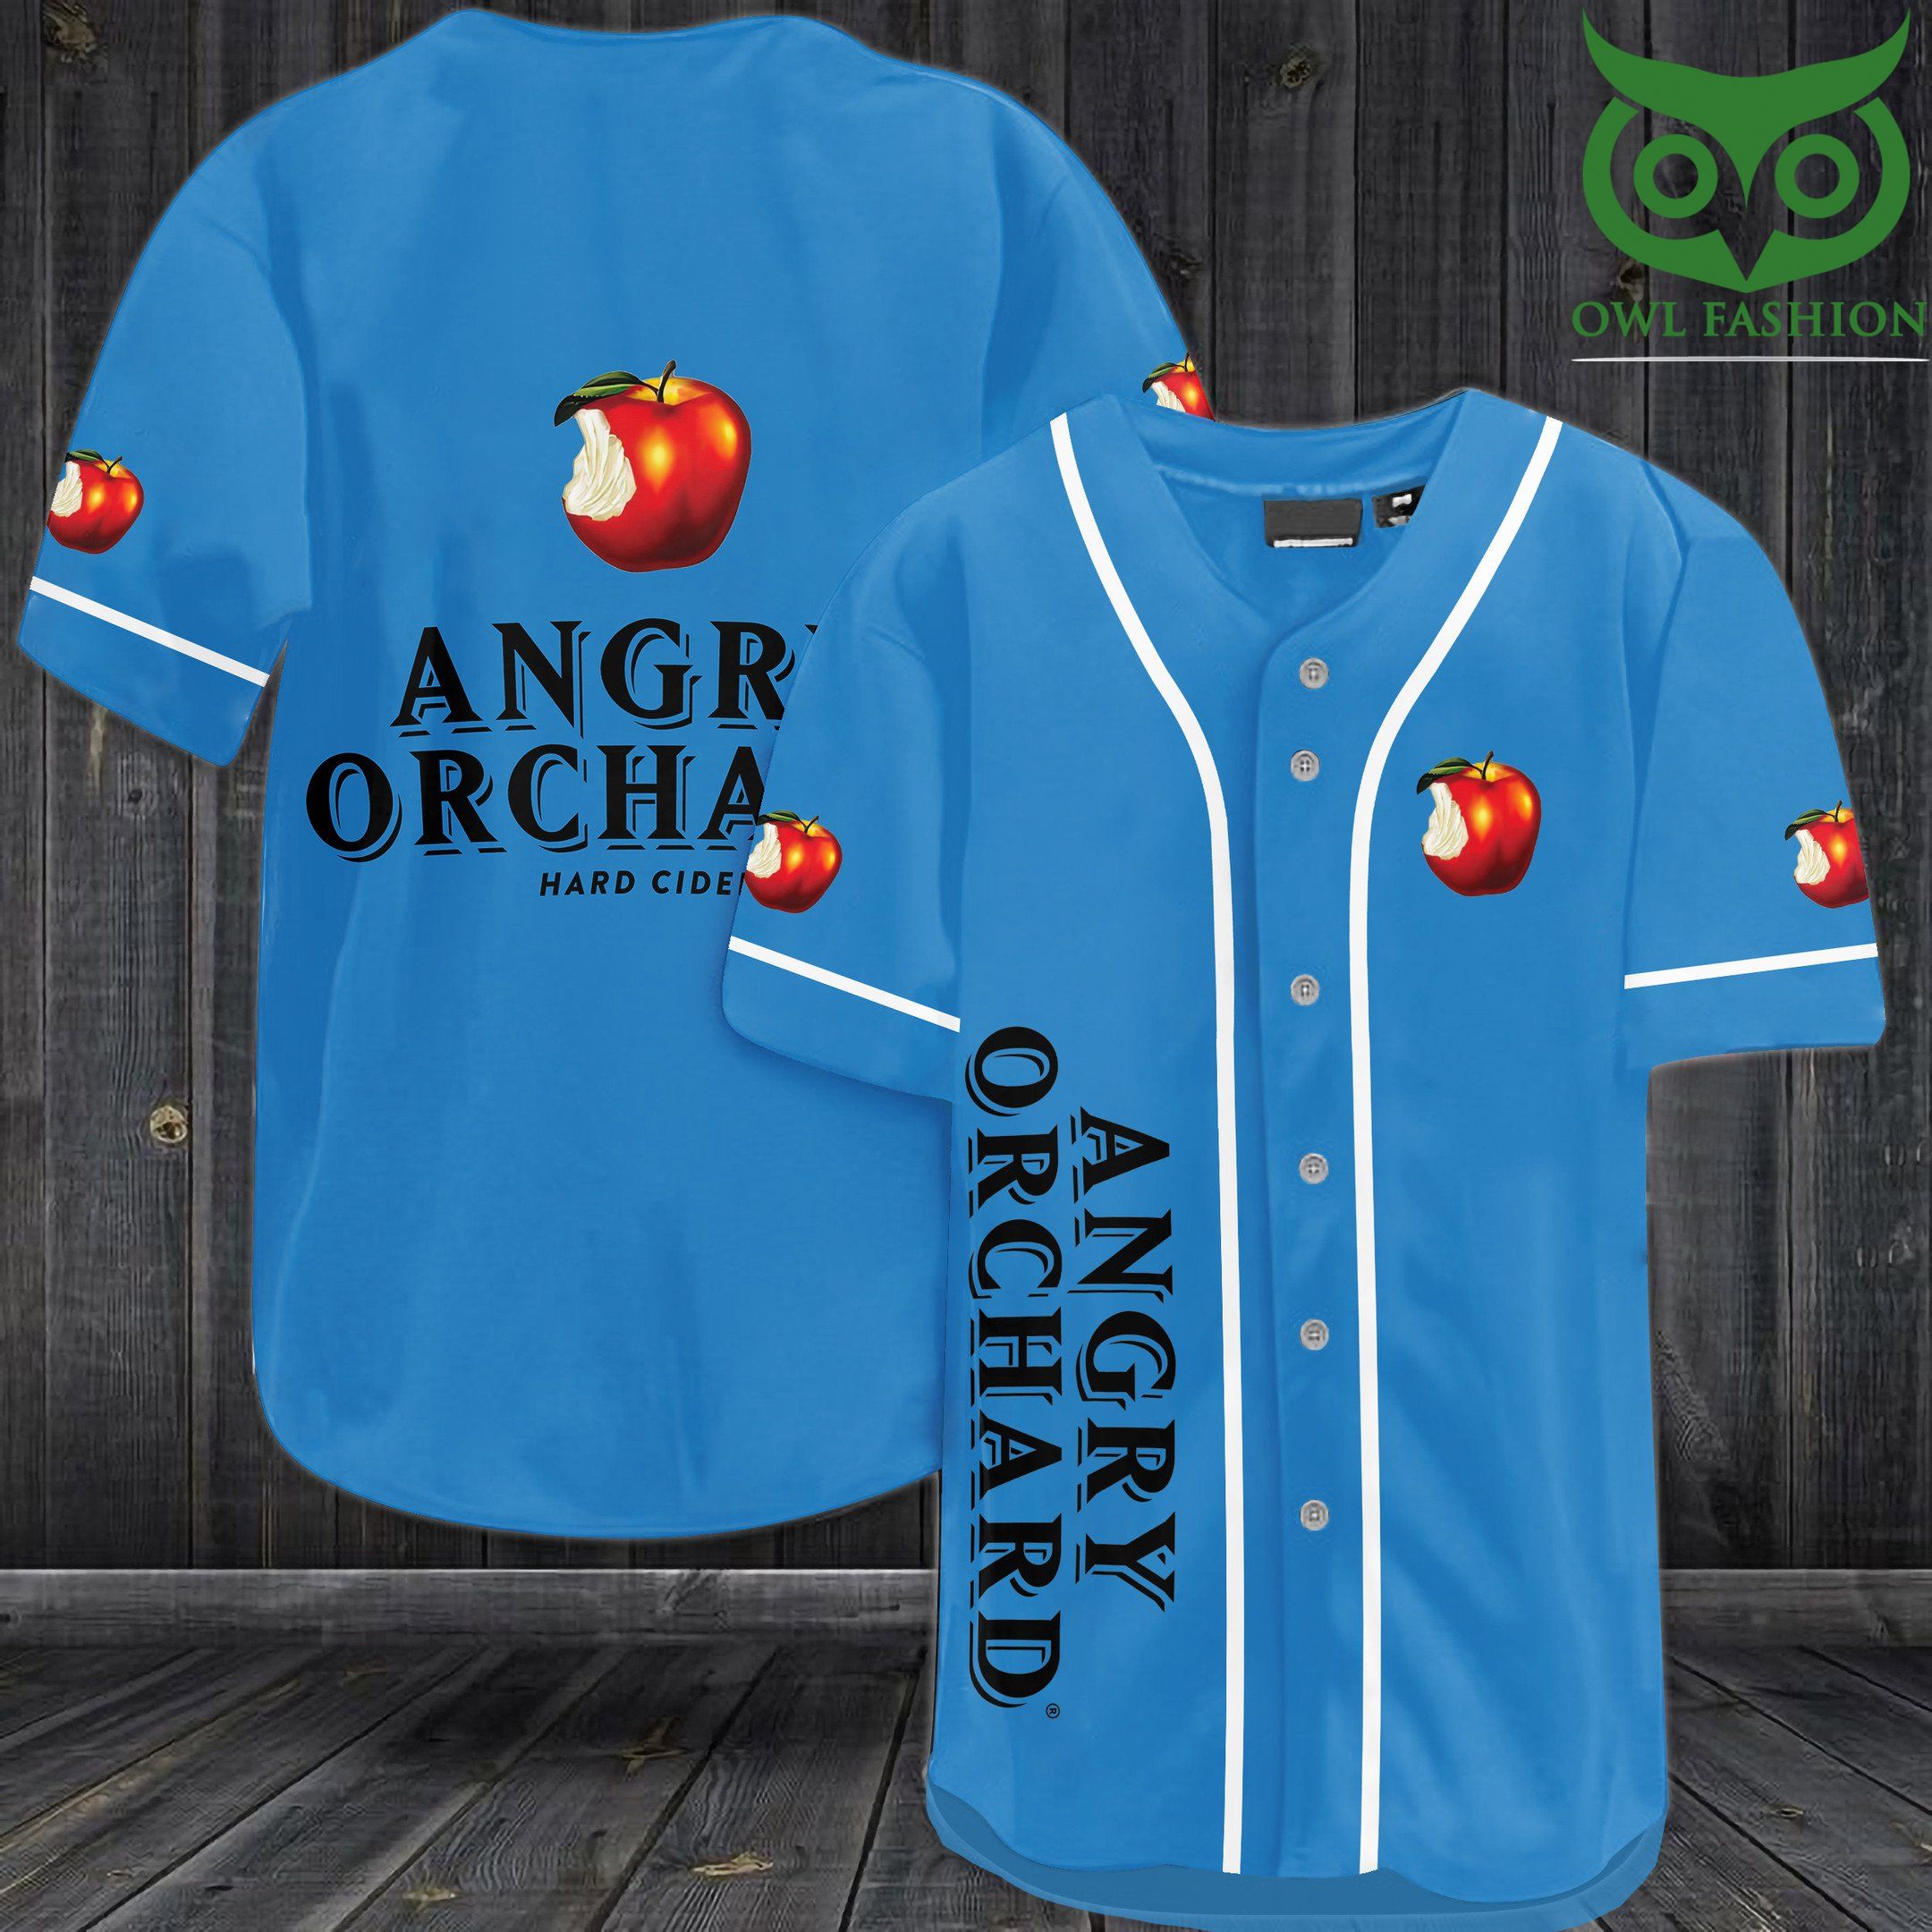 3 Angry Orchard Light Blue Baseball Jersey Shirt